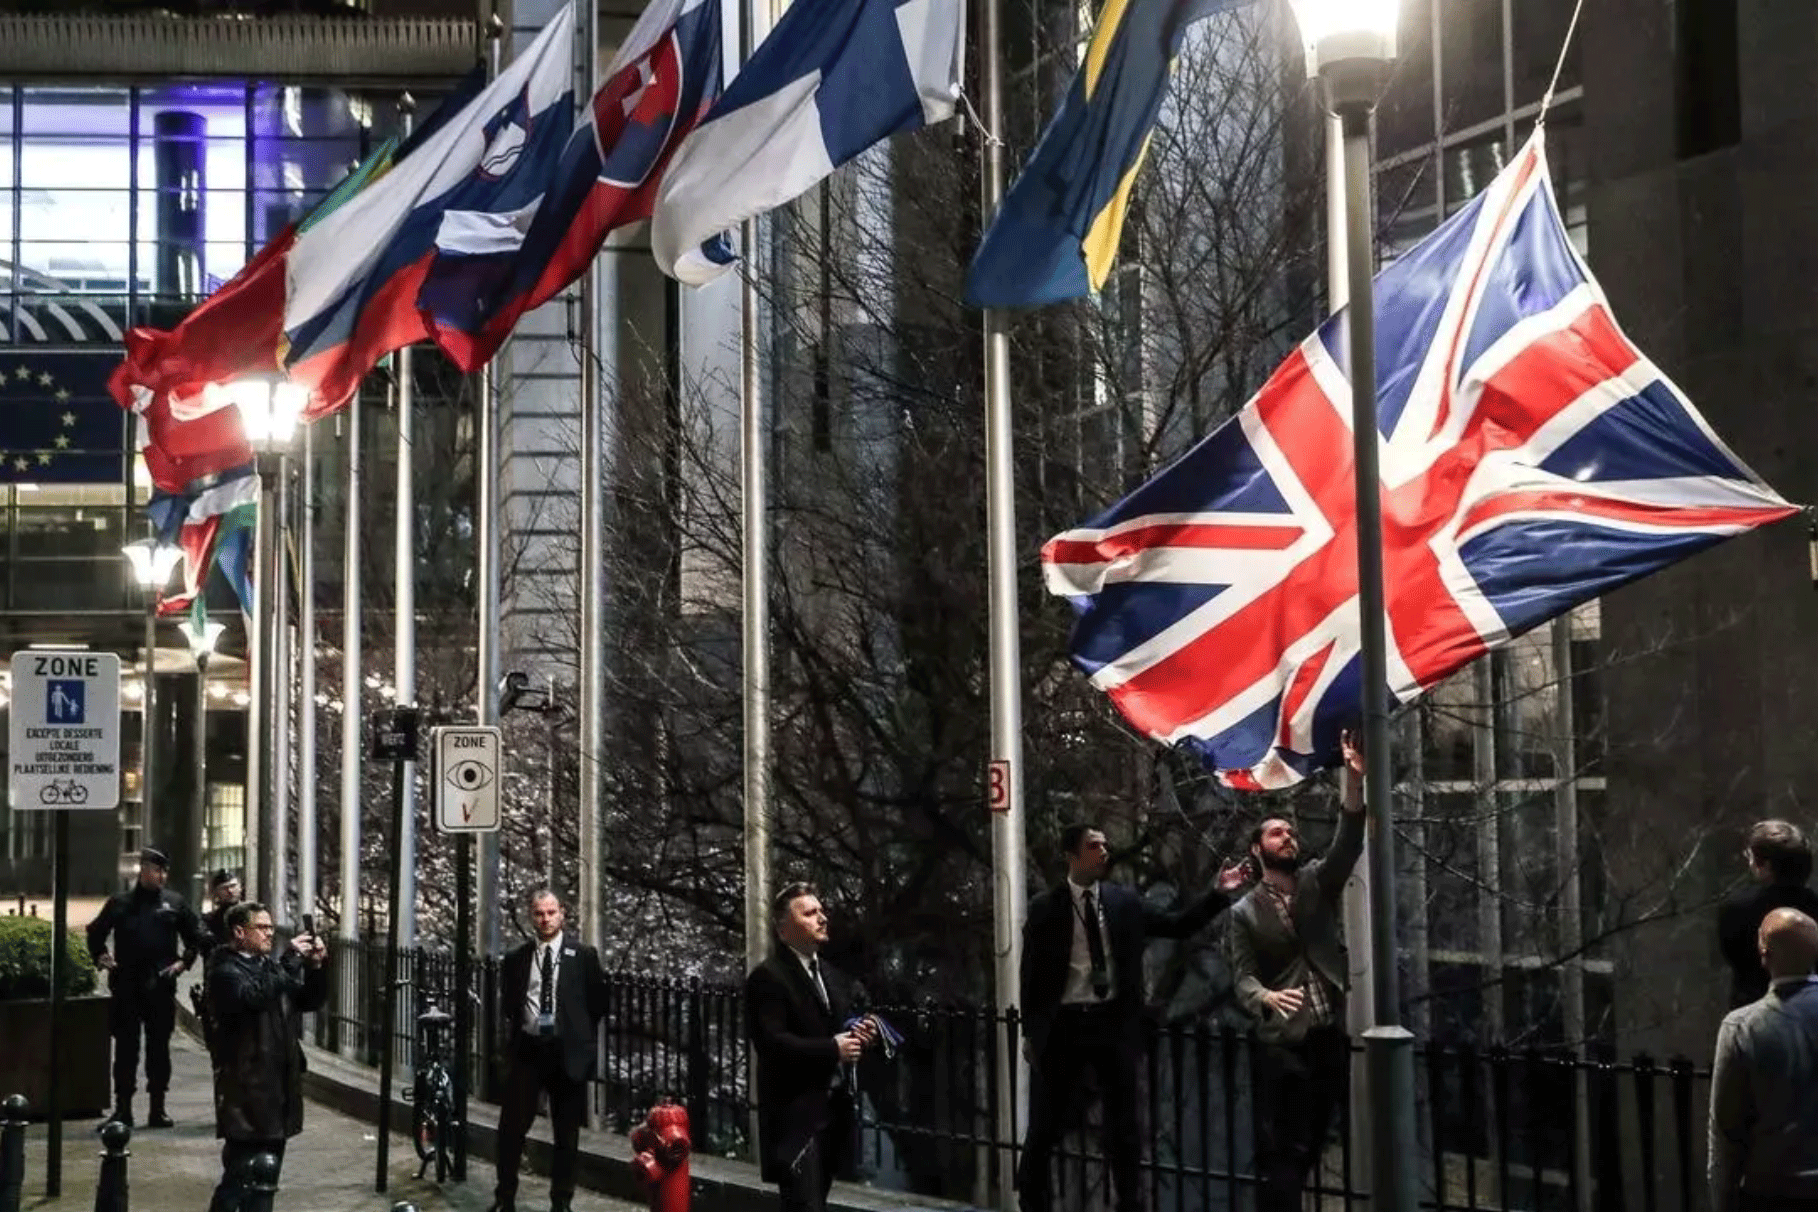 موظفون ينزلون علم بريطانيا في بروكسل في يوم بريكست في 31 يناير 2020